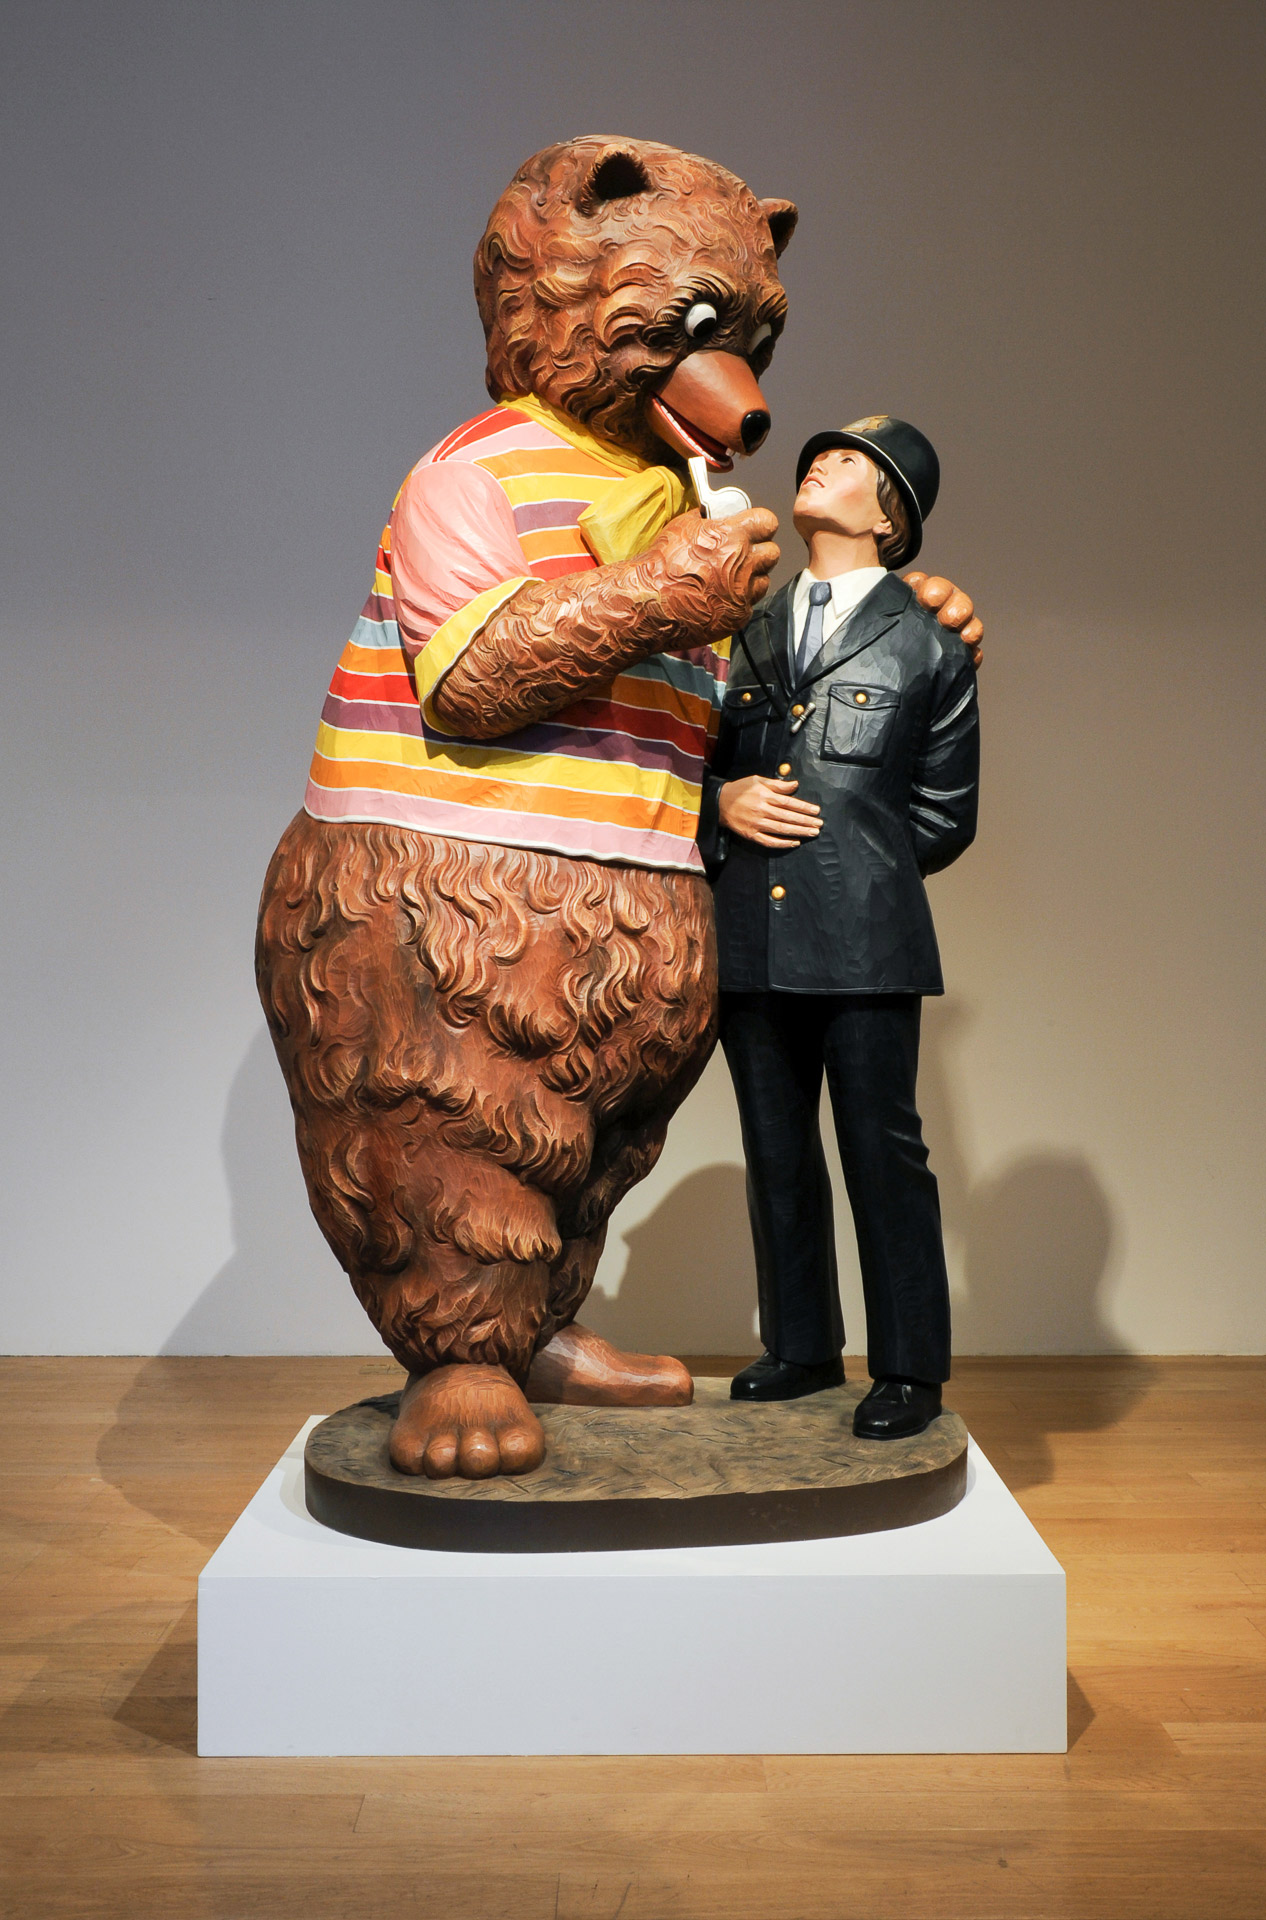 Abb. 1-2: Jeff Koons, Bear and Policeman, 1988 Studio Digital